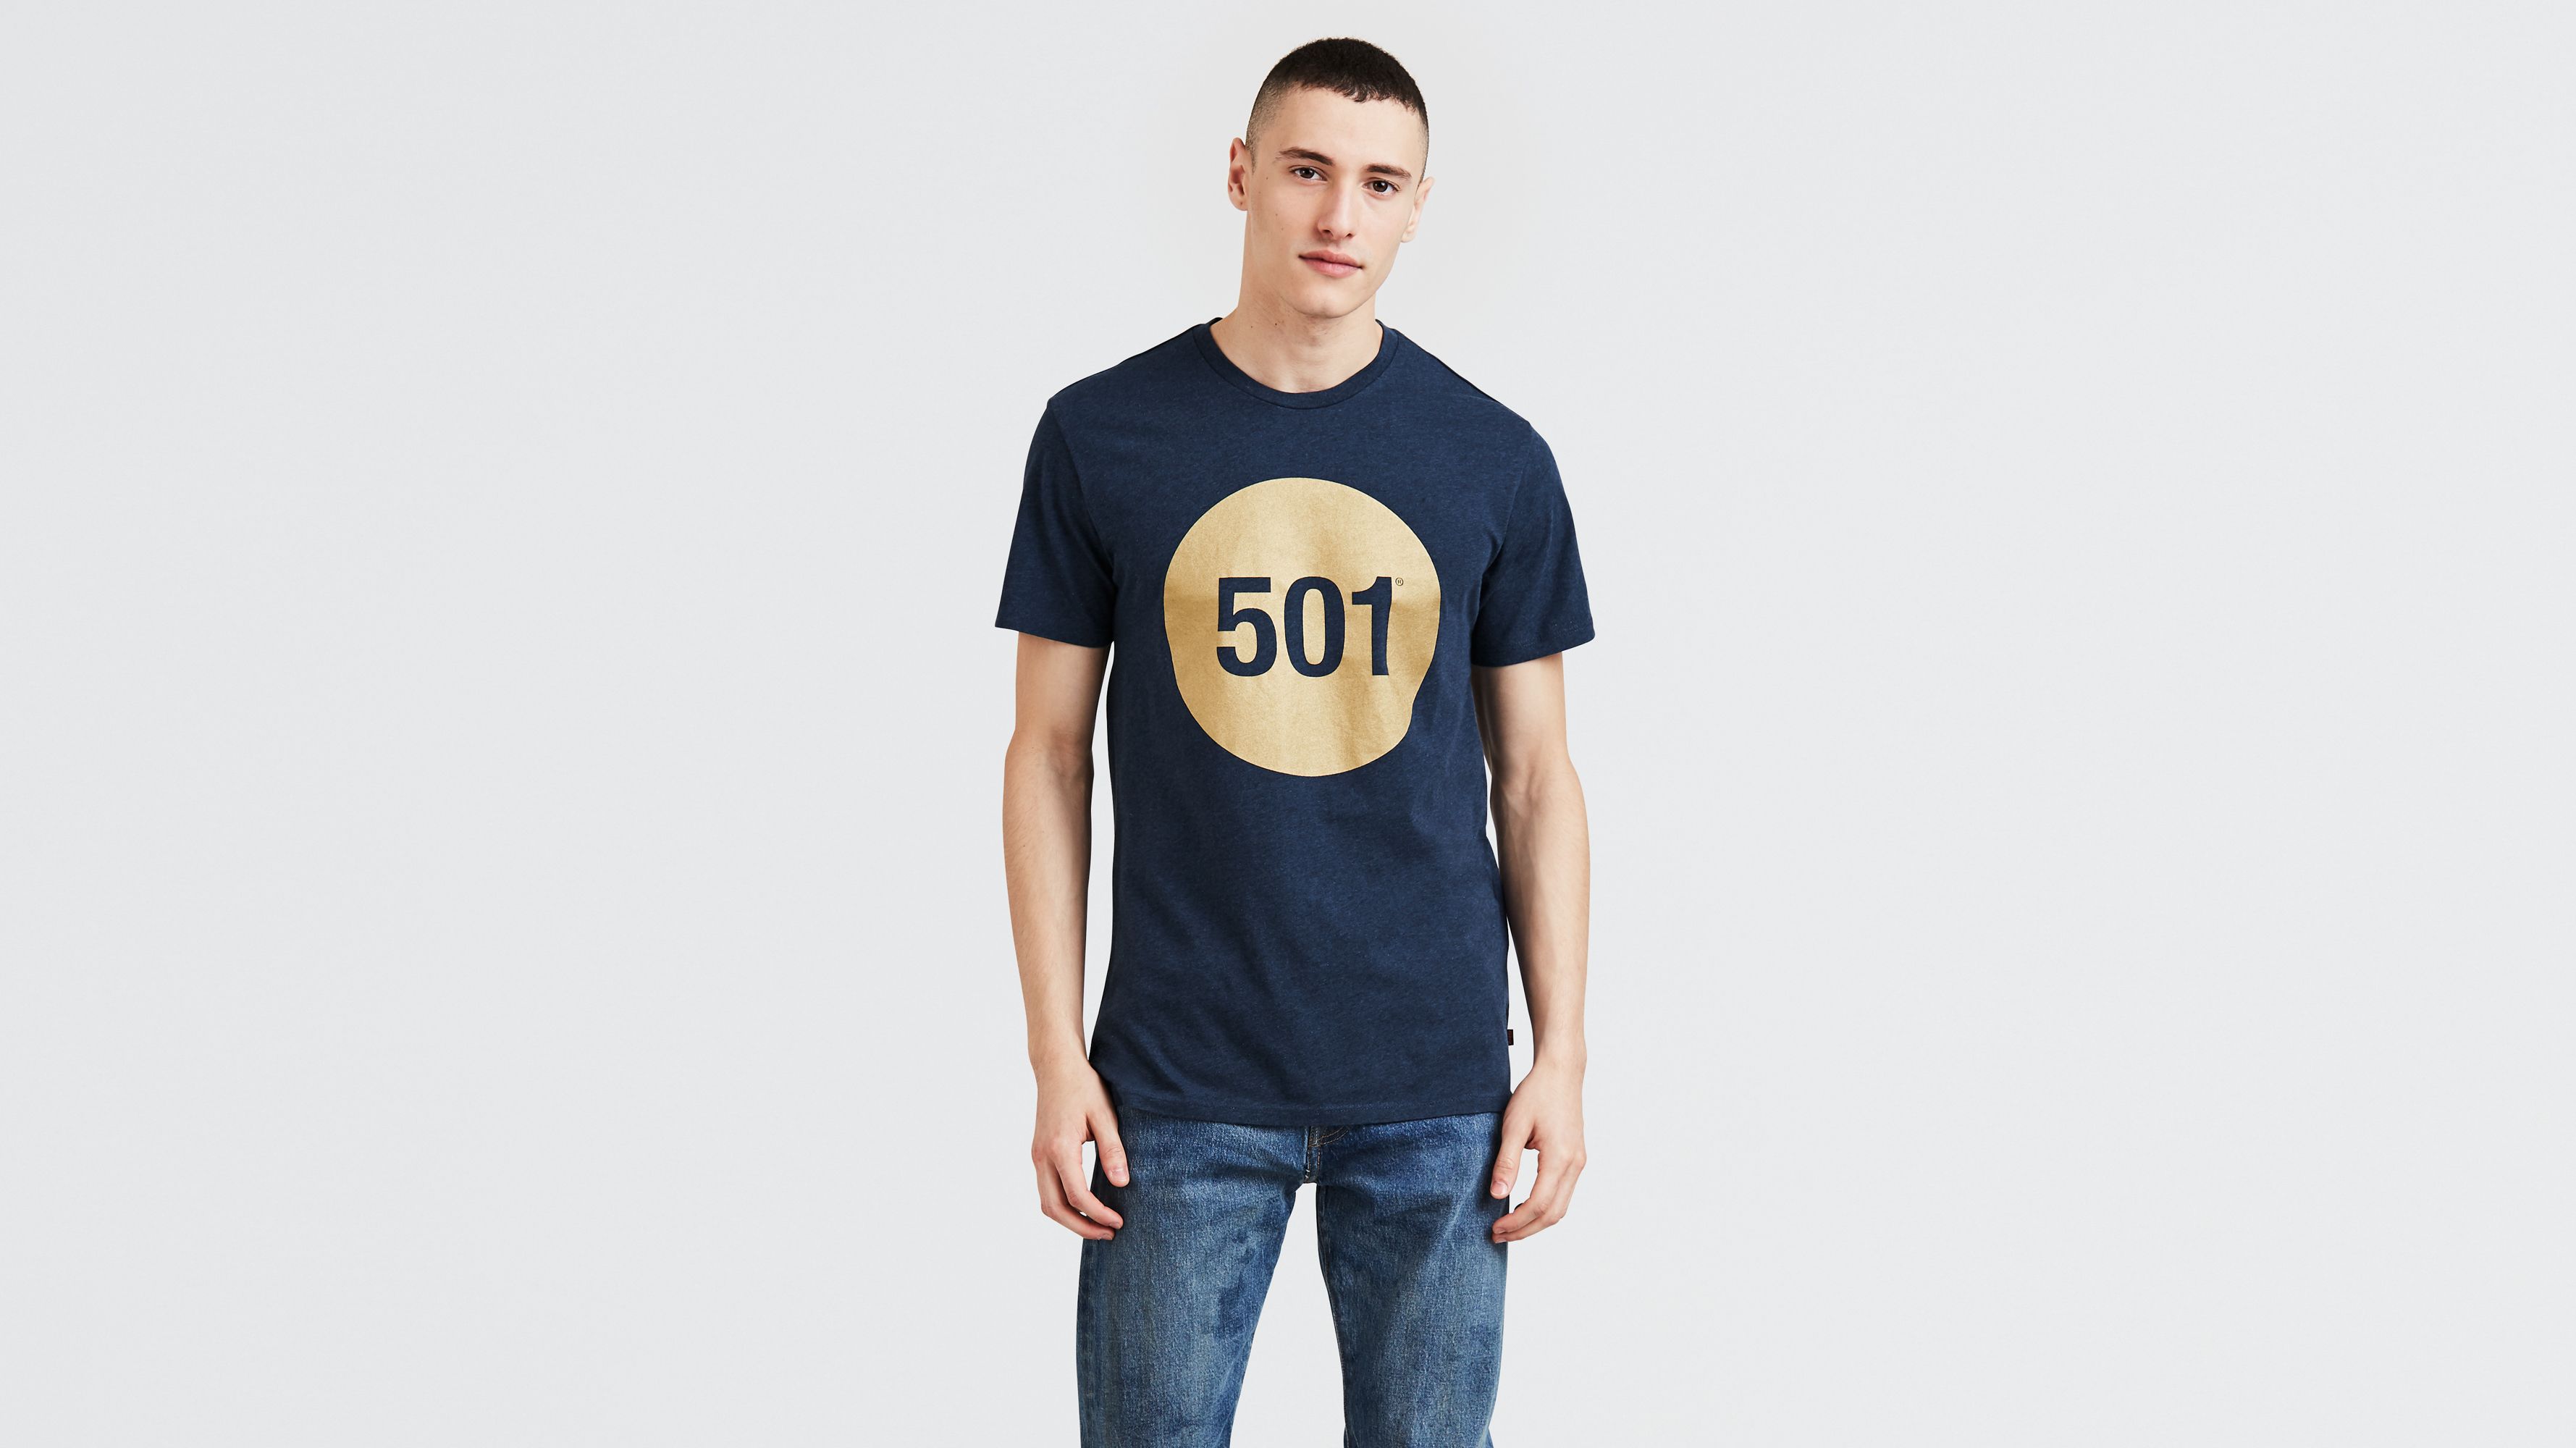 levis 501 t shirt